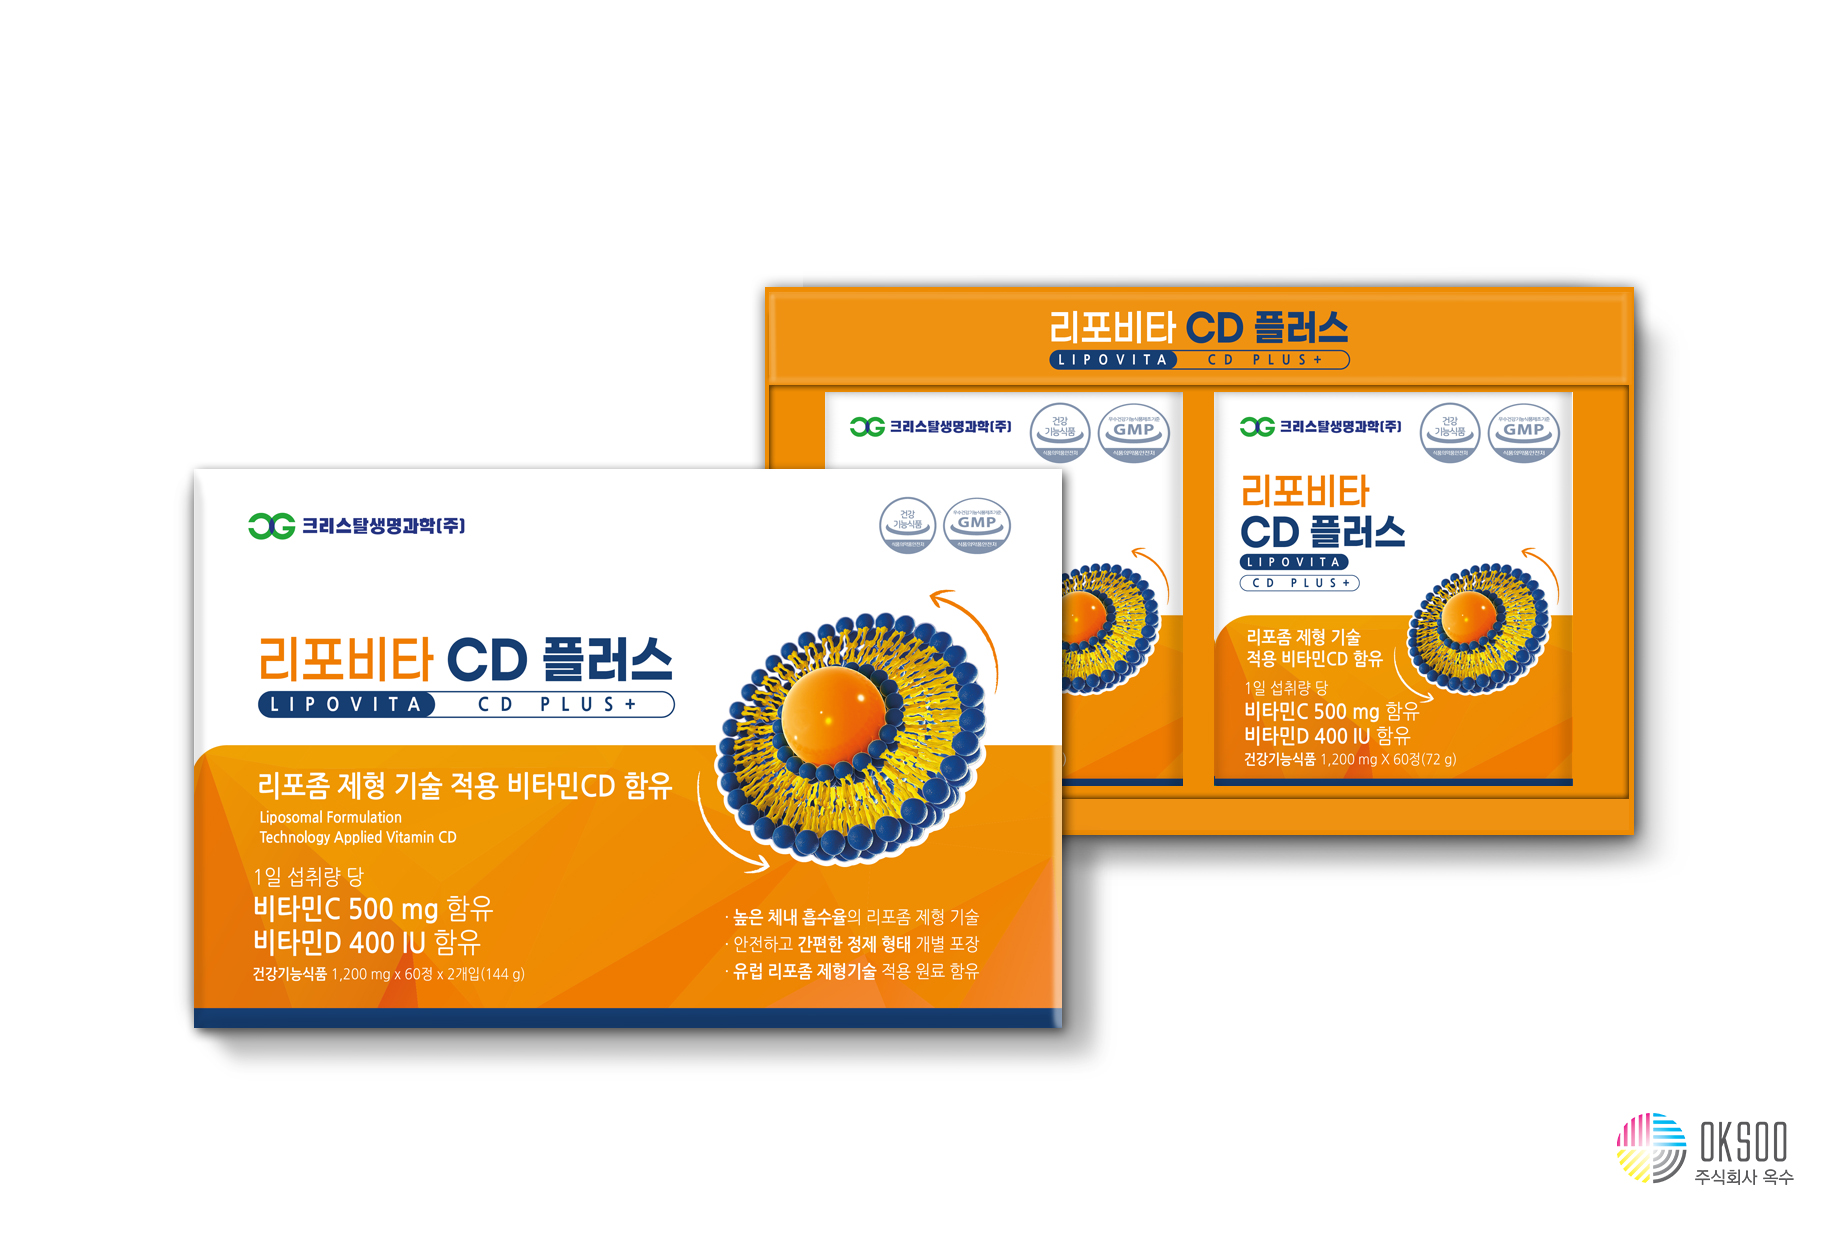 리포비타 CD 플러스 1.2gX60정 2개월분 리포좀 공법 비타민C 비타민D 함유